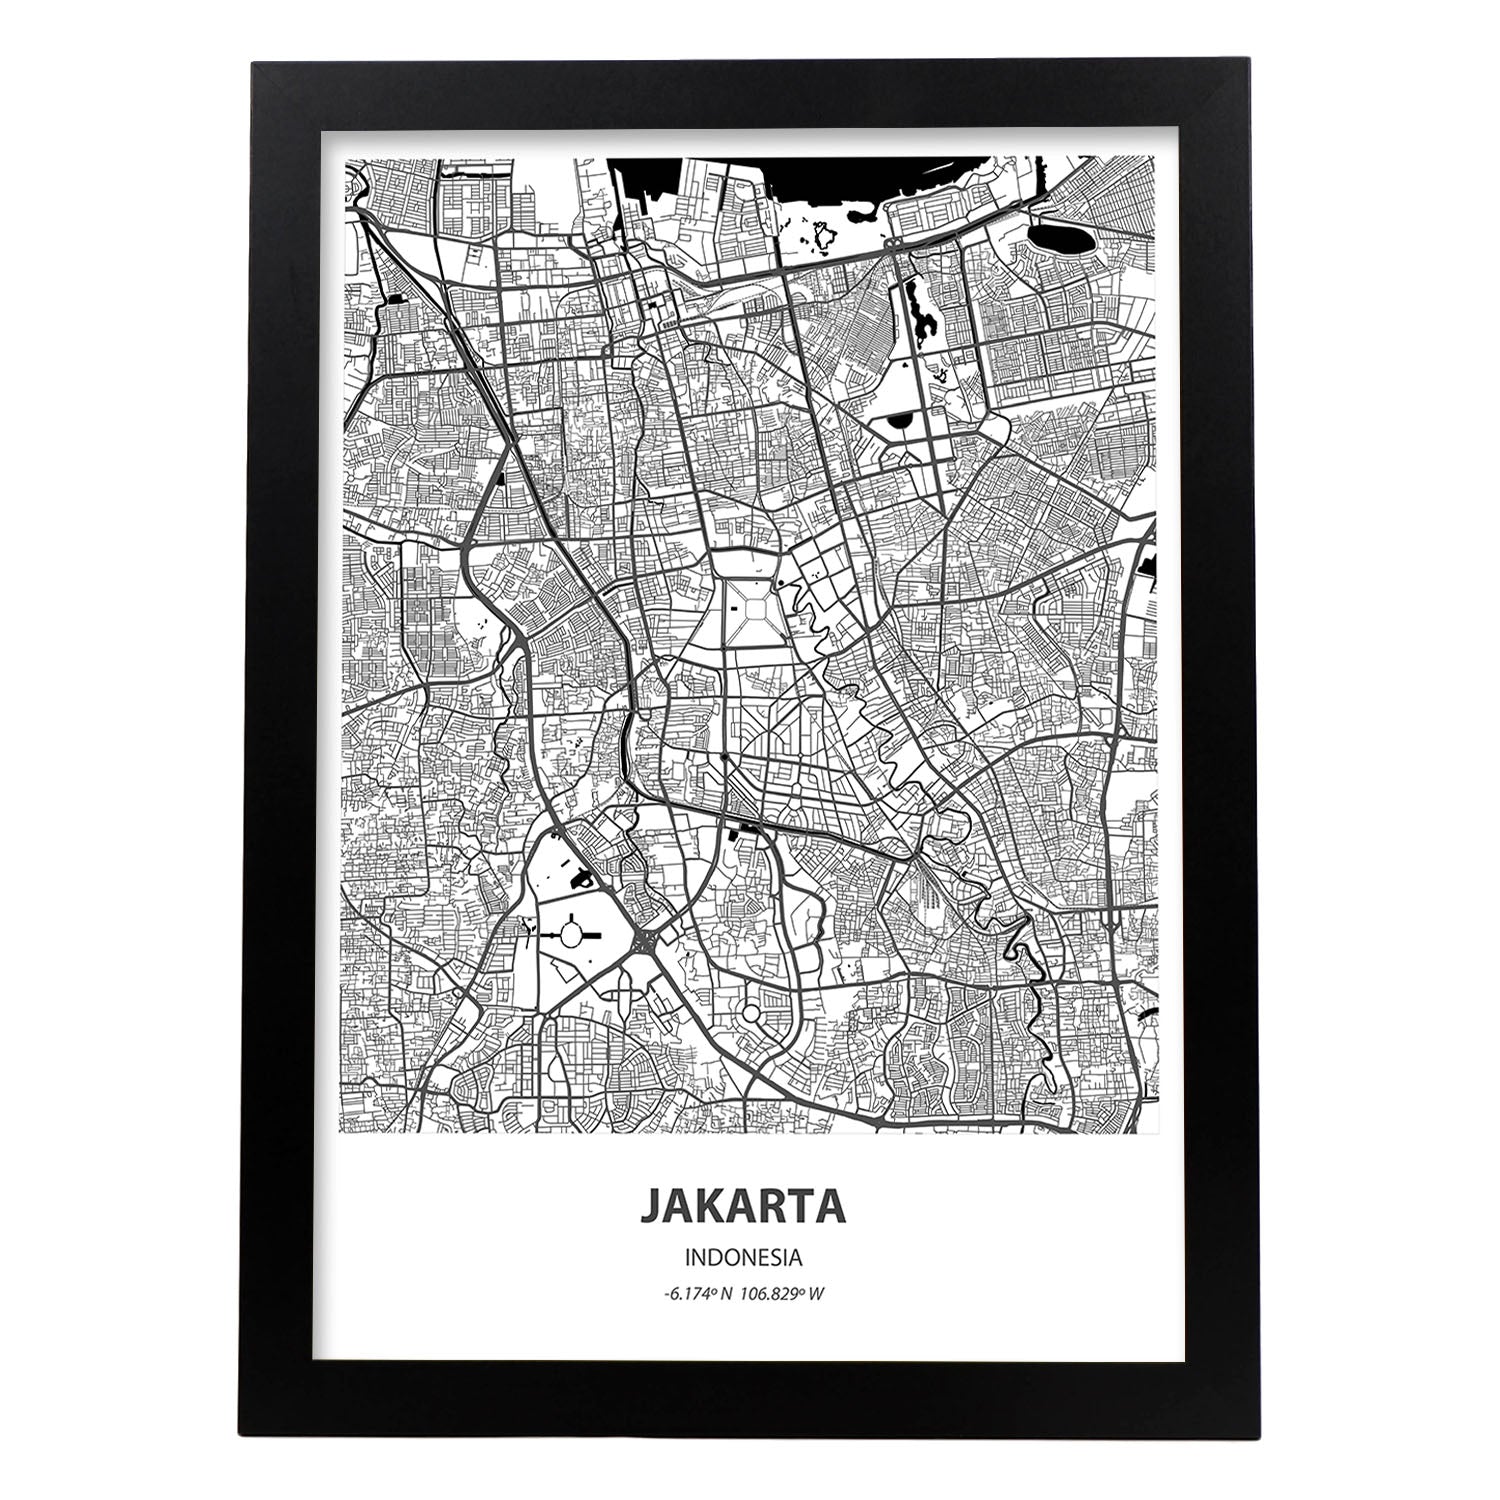 Poster con mapa de Jakarta - Indonesia. Láminas de ciudades de Asia con mares y ríos en color negro.-Artwork-Nacnic-A4-Marco Negro-Nacnic Estudio SL